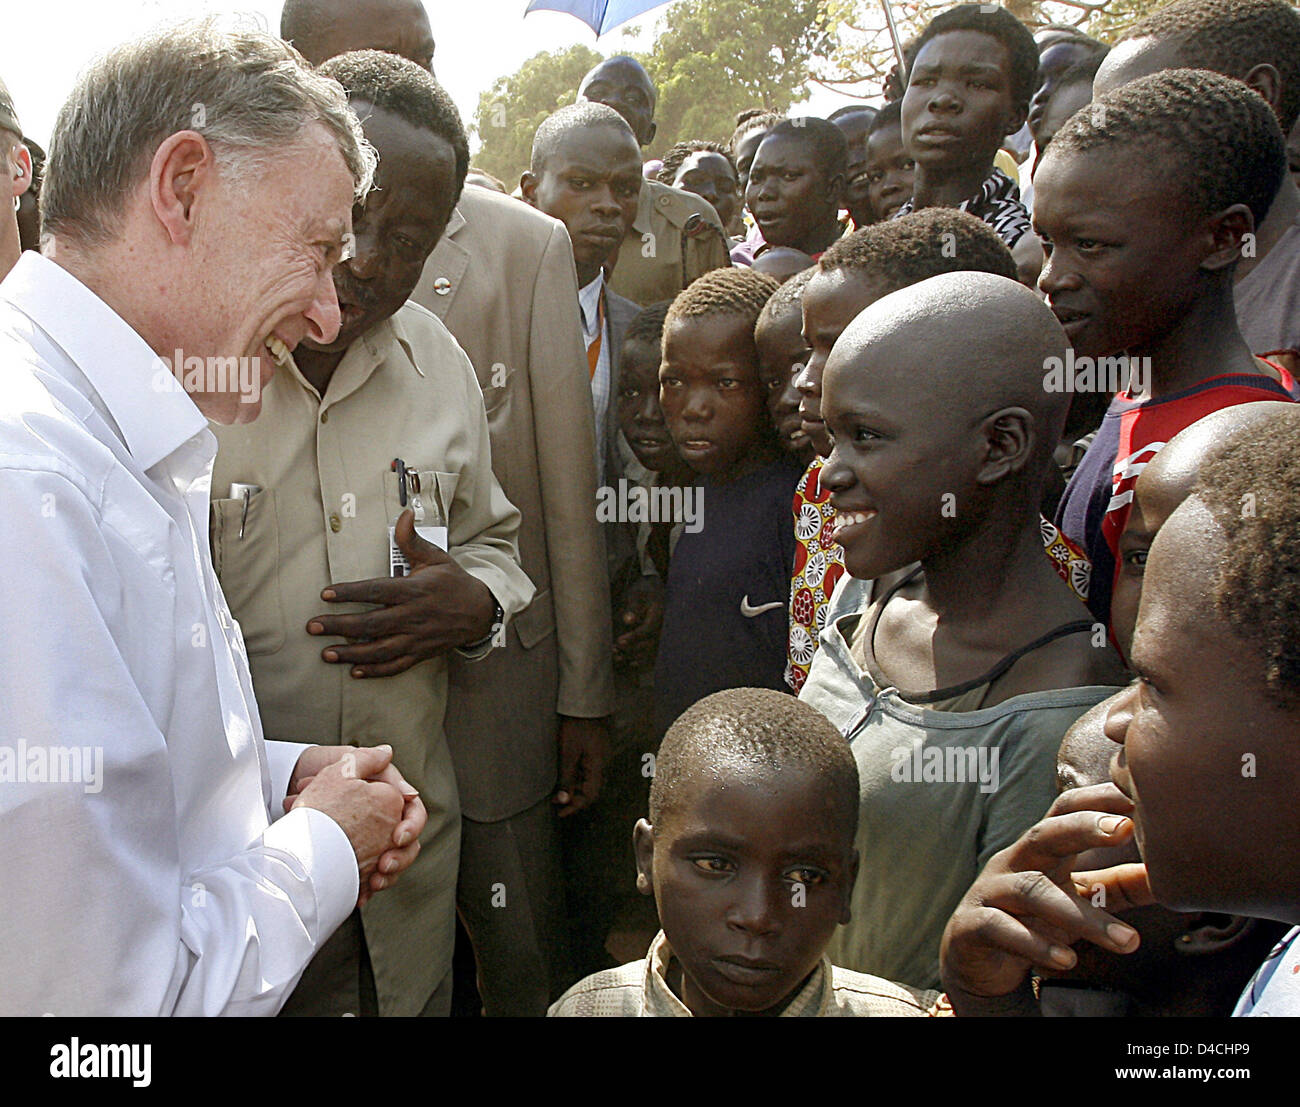 Deutschlands Präsident Horst Köhler (L) sprechen Sie mit Kindern im Camp für innere Flüchtlinge in Gulu, Uganda, 5. Februar 2008. Herr Koehler und seine Frau Eva Koehler sind auf einem dreitägigen Besuch in Uganda und wird dann weiter nach Ruanda. Foto: WOLFGANG KUMM Stockfoto